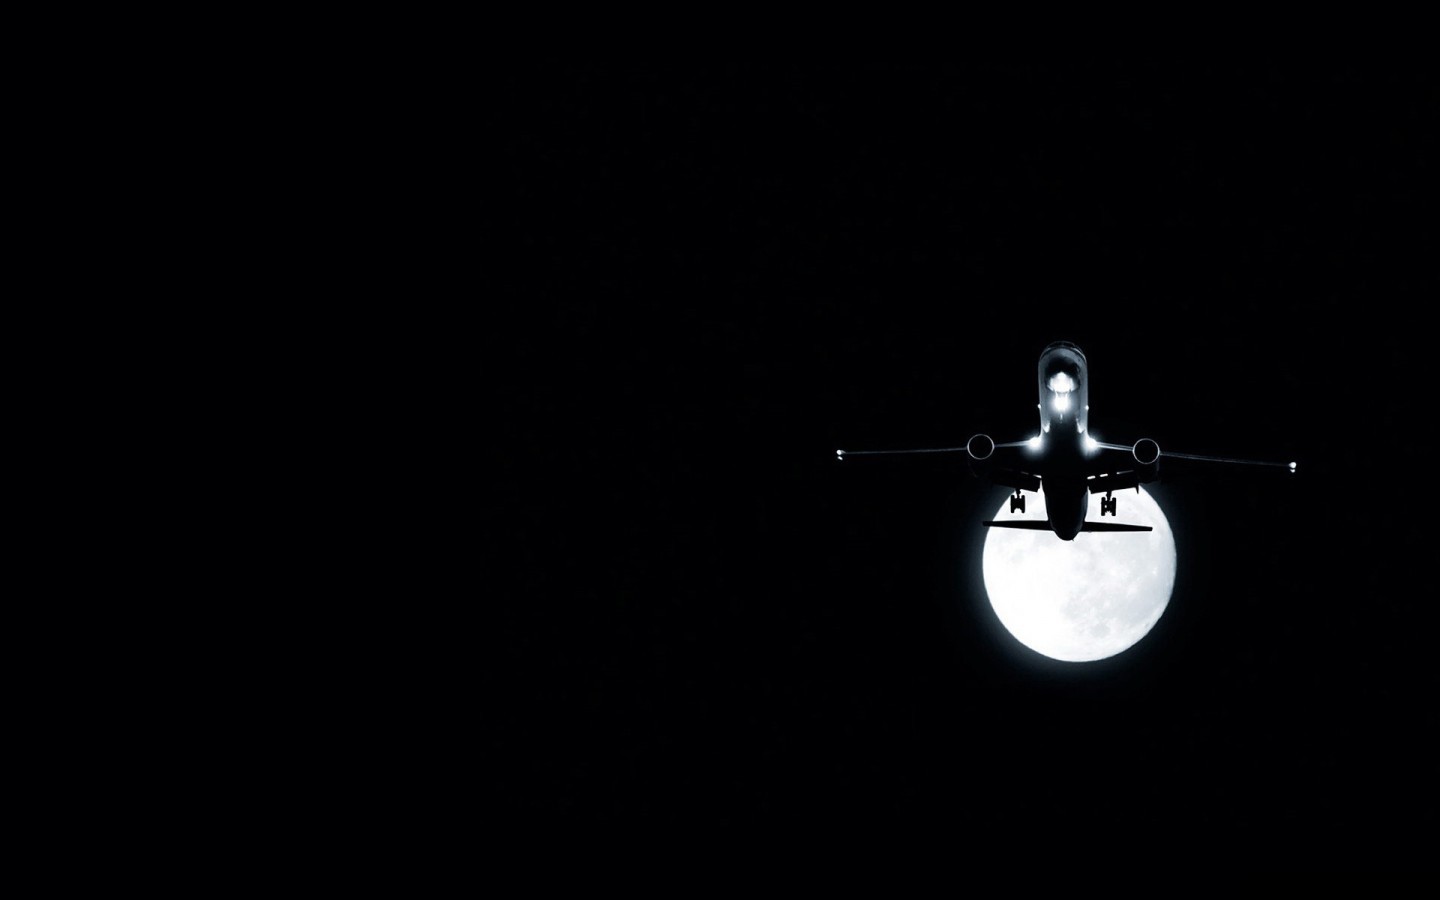 Скачать обои бесплатно Транспорт, Ночь, Луна, Самолеты картинка на рабочий стол ПК